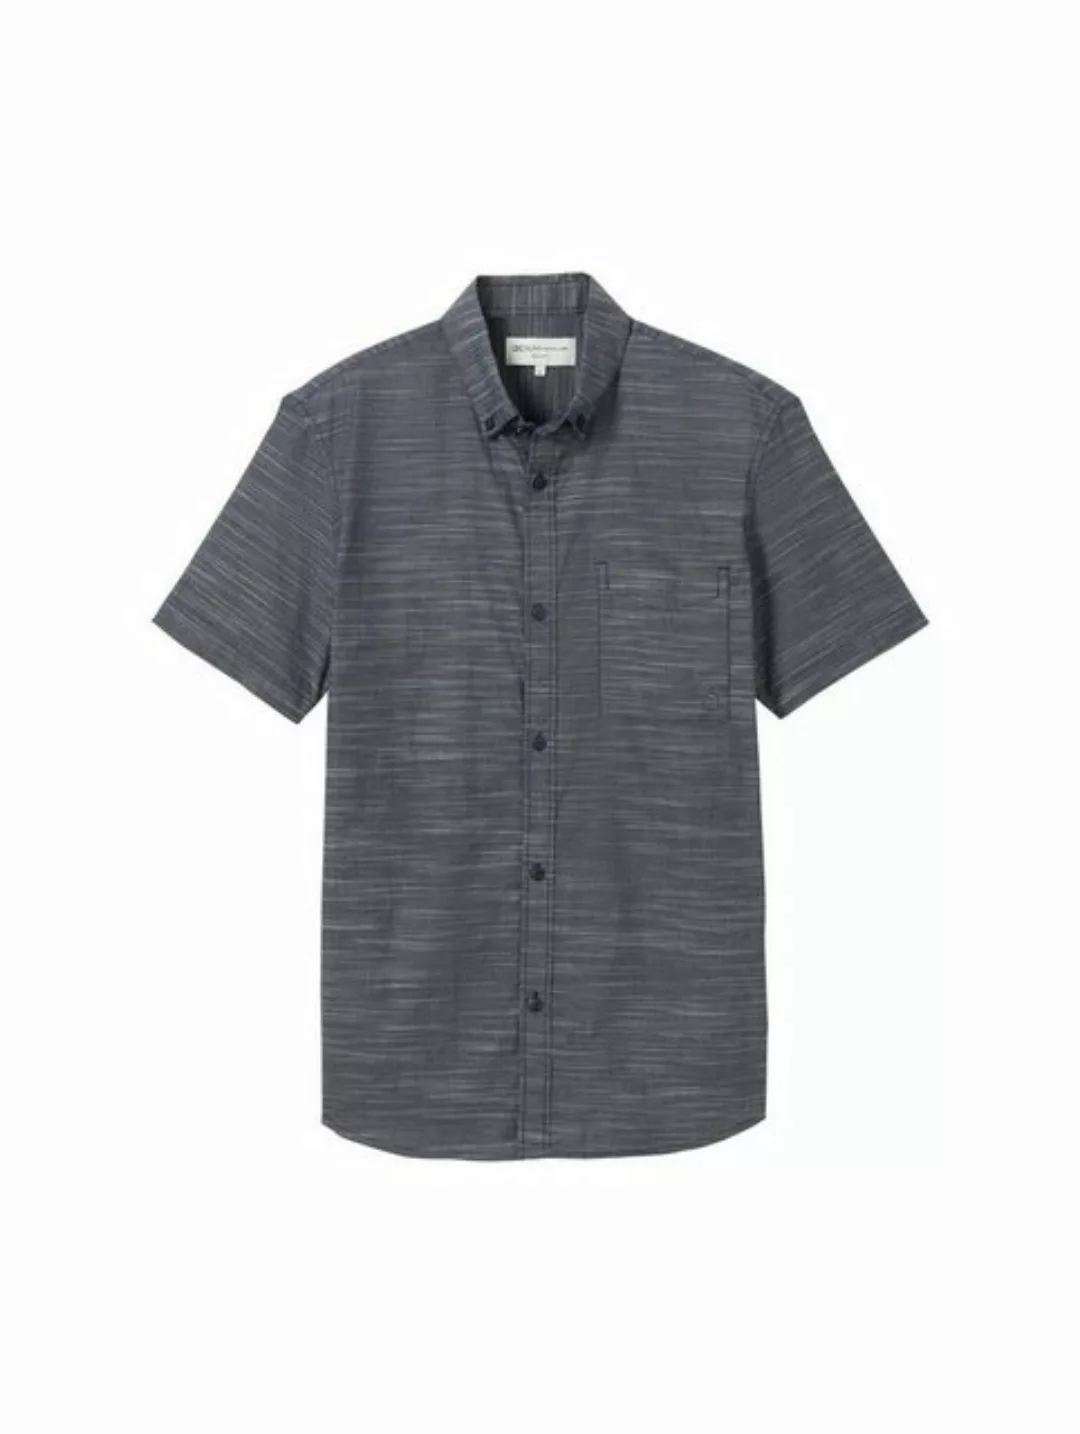 TOM TAILOR Denim T-Shirt striped slubyarn shirt, navy green white structure günstig online kaufen